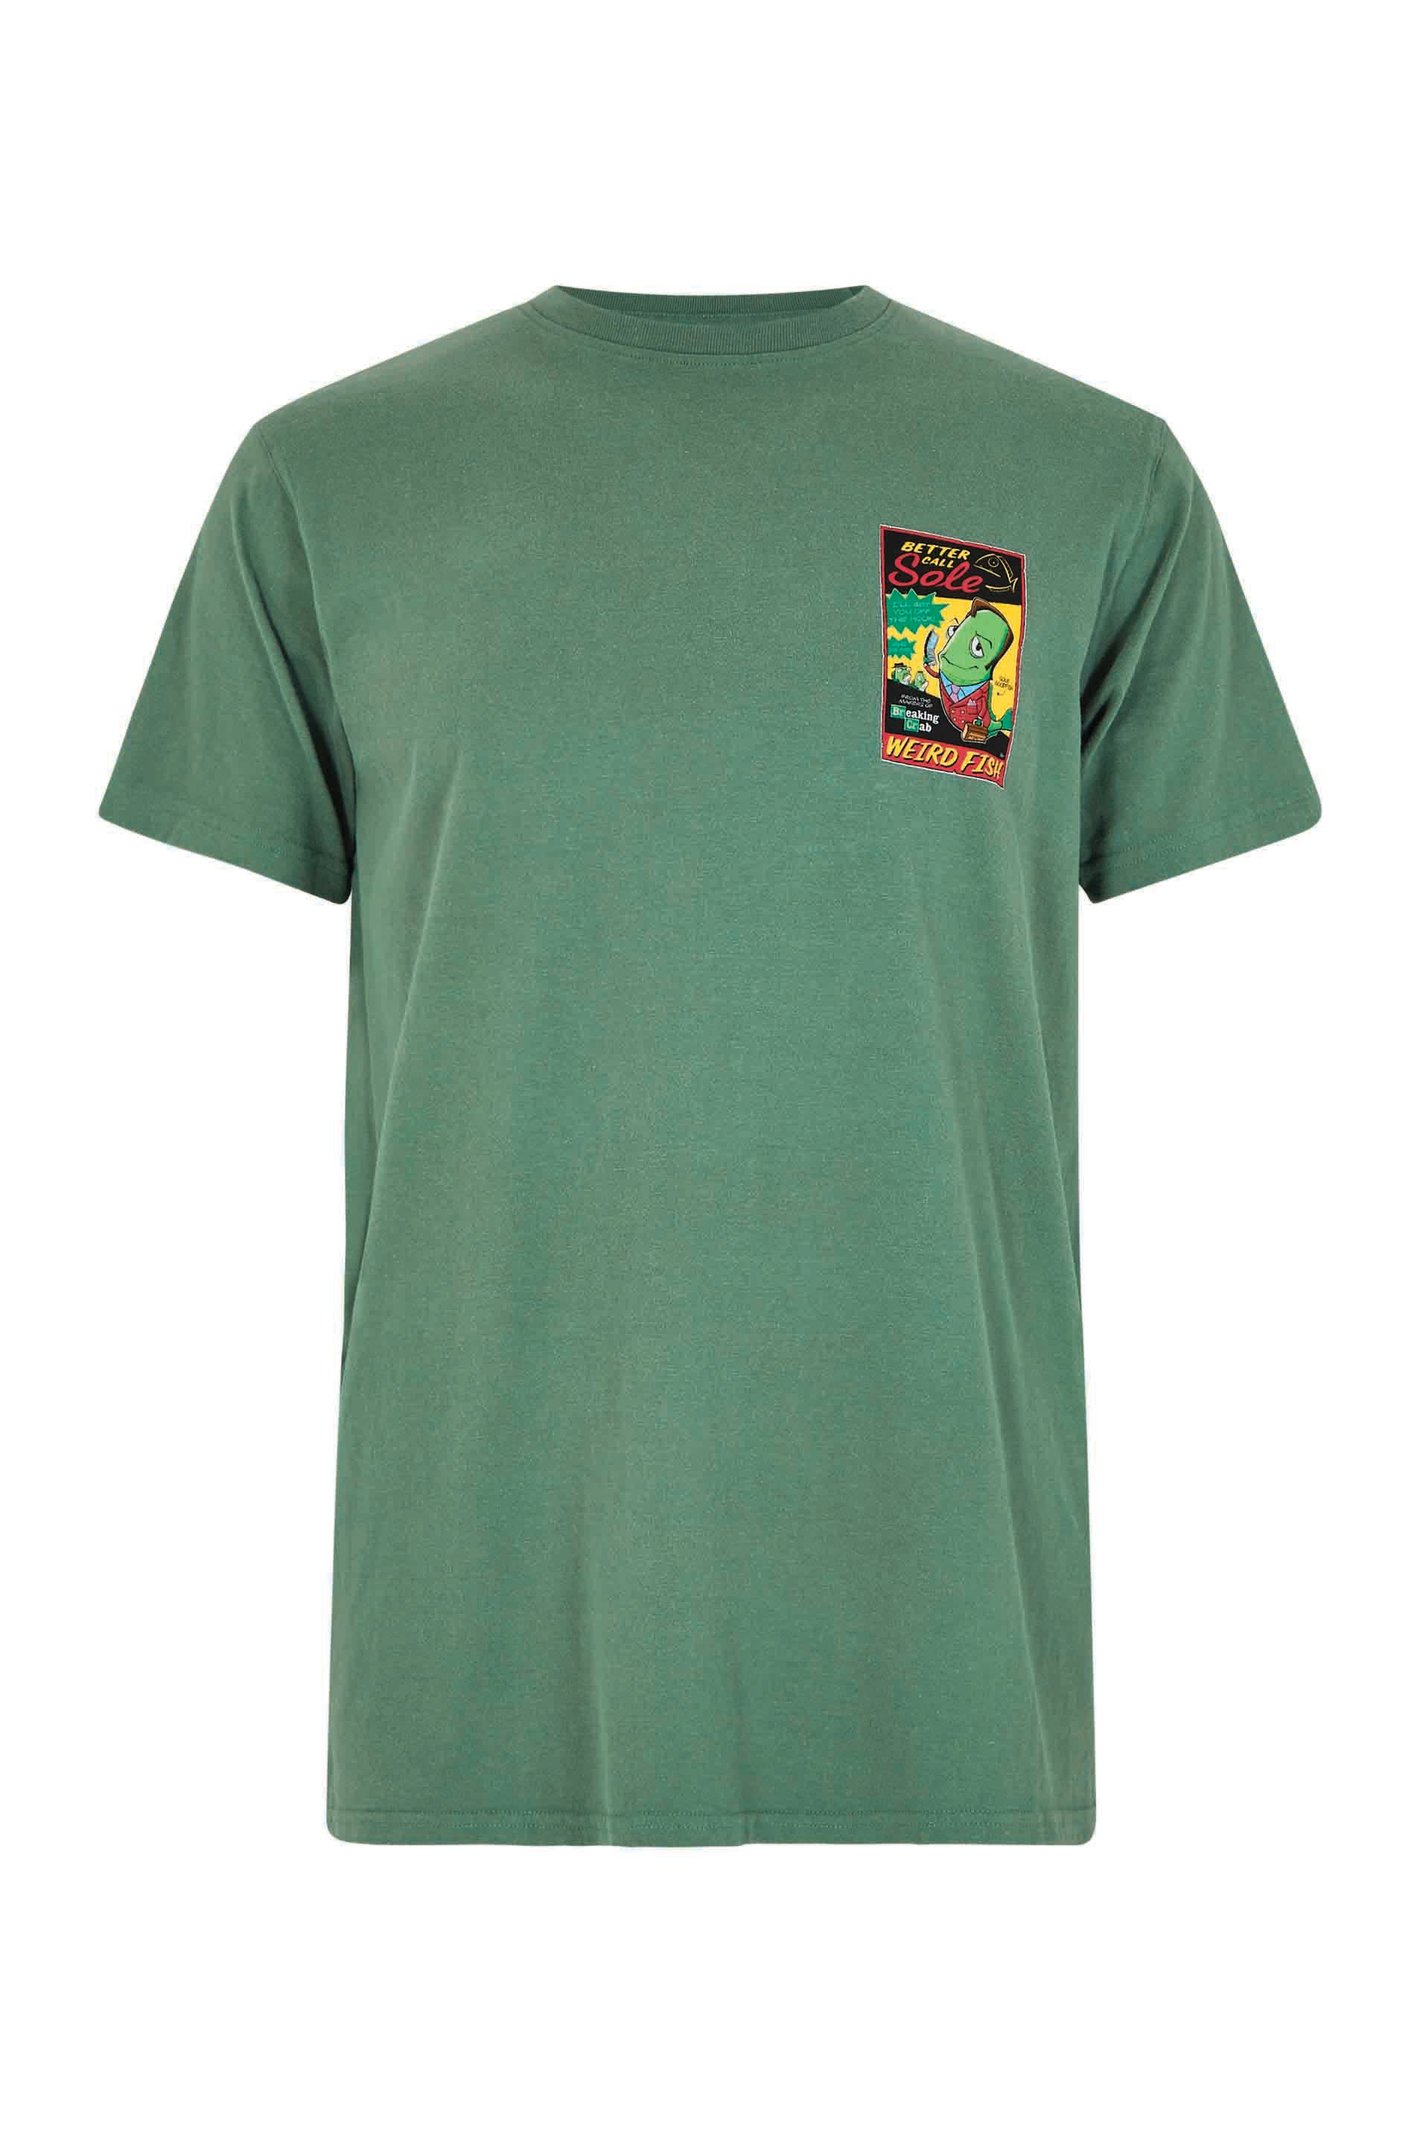 Weird Fish Call Sole Artist T-Shirt Dusky Green Size 5XL